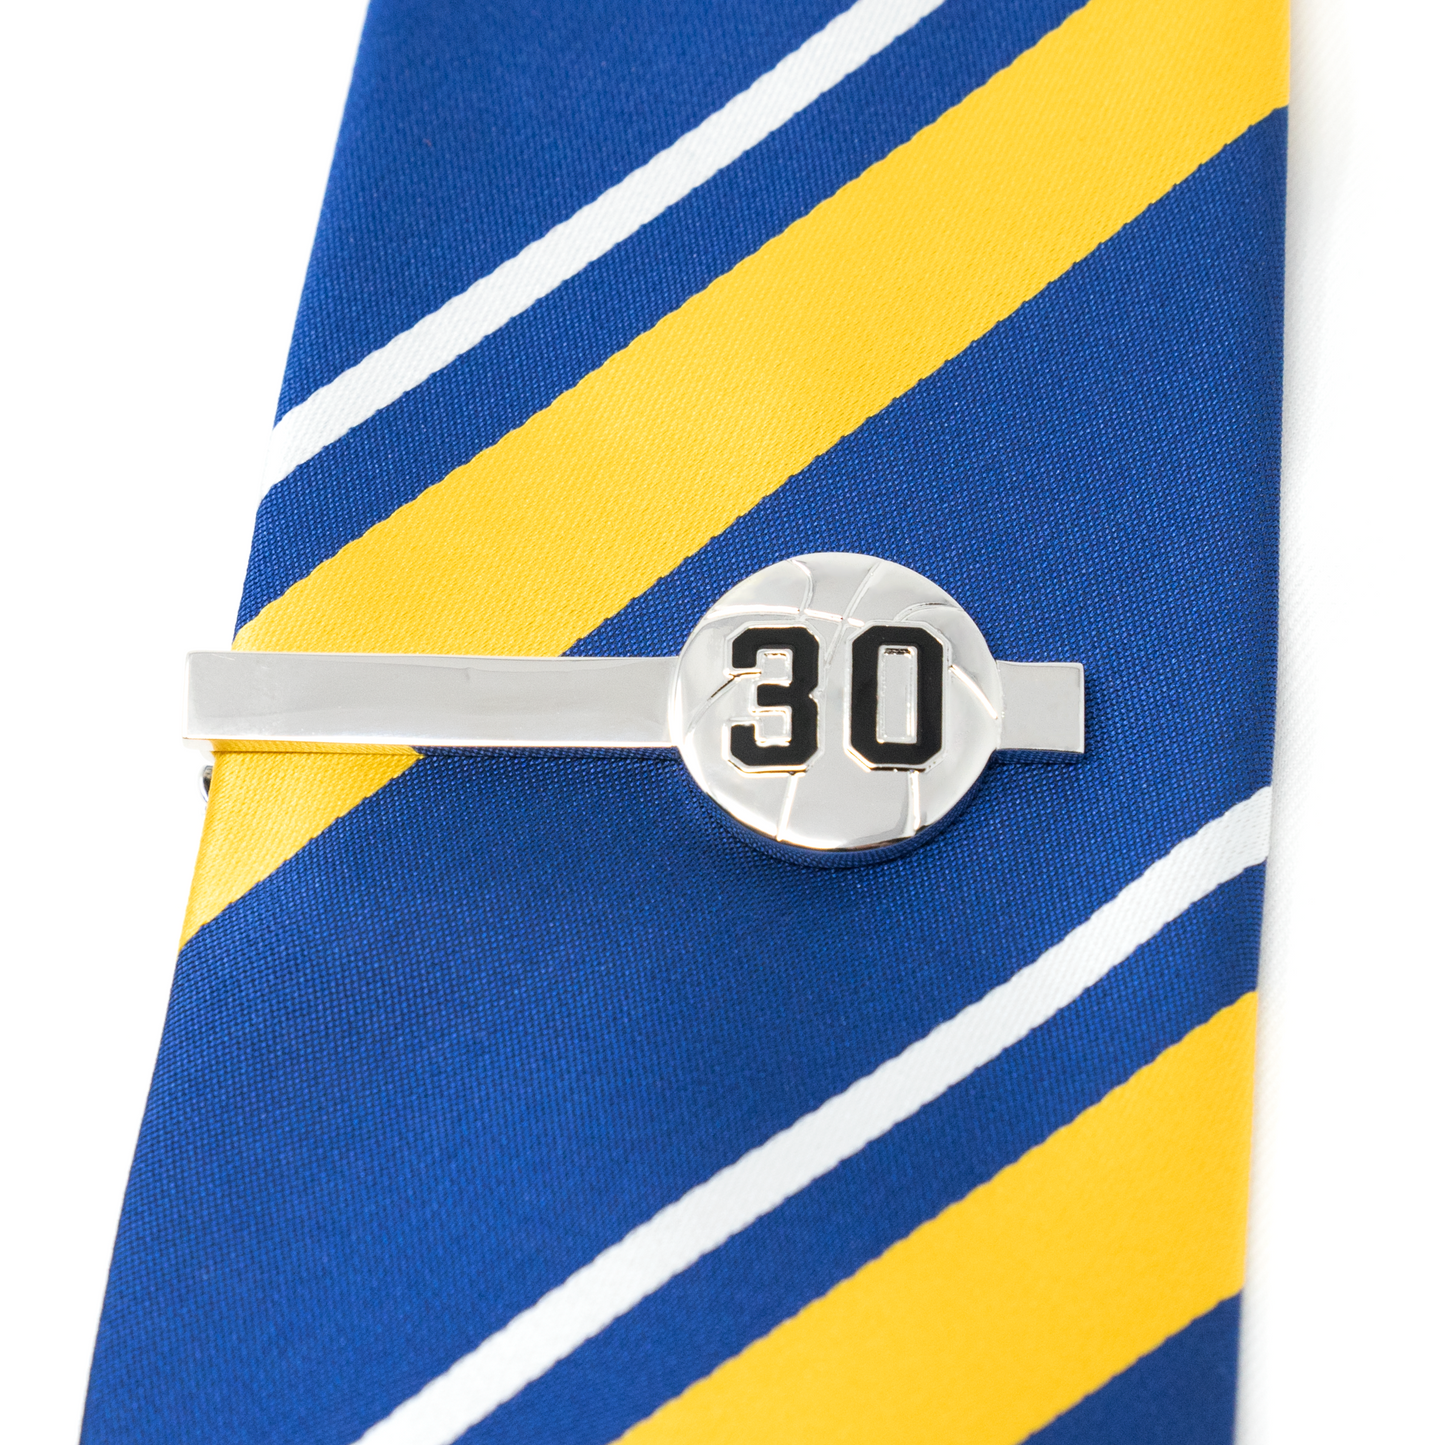 No. 30 Basketball Tie Clip